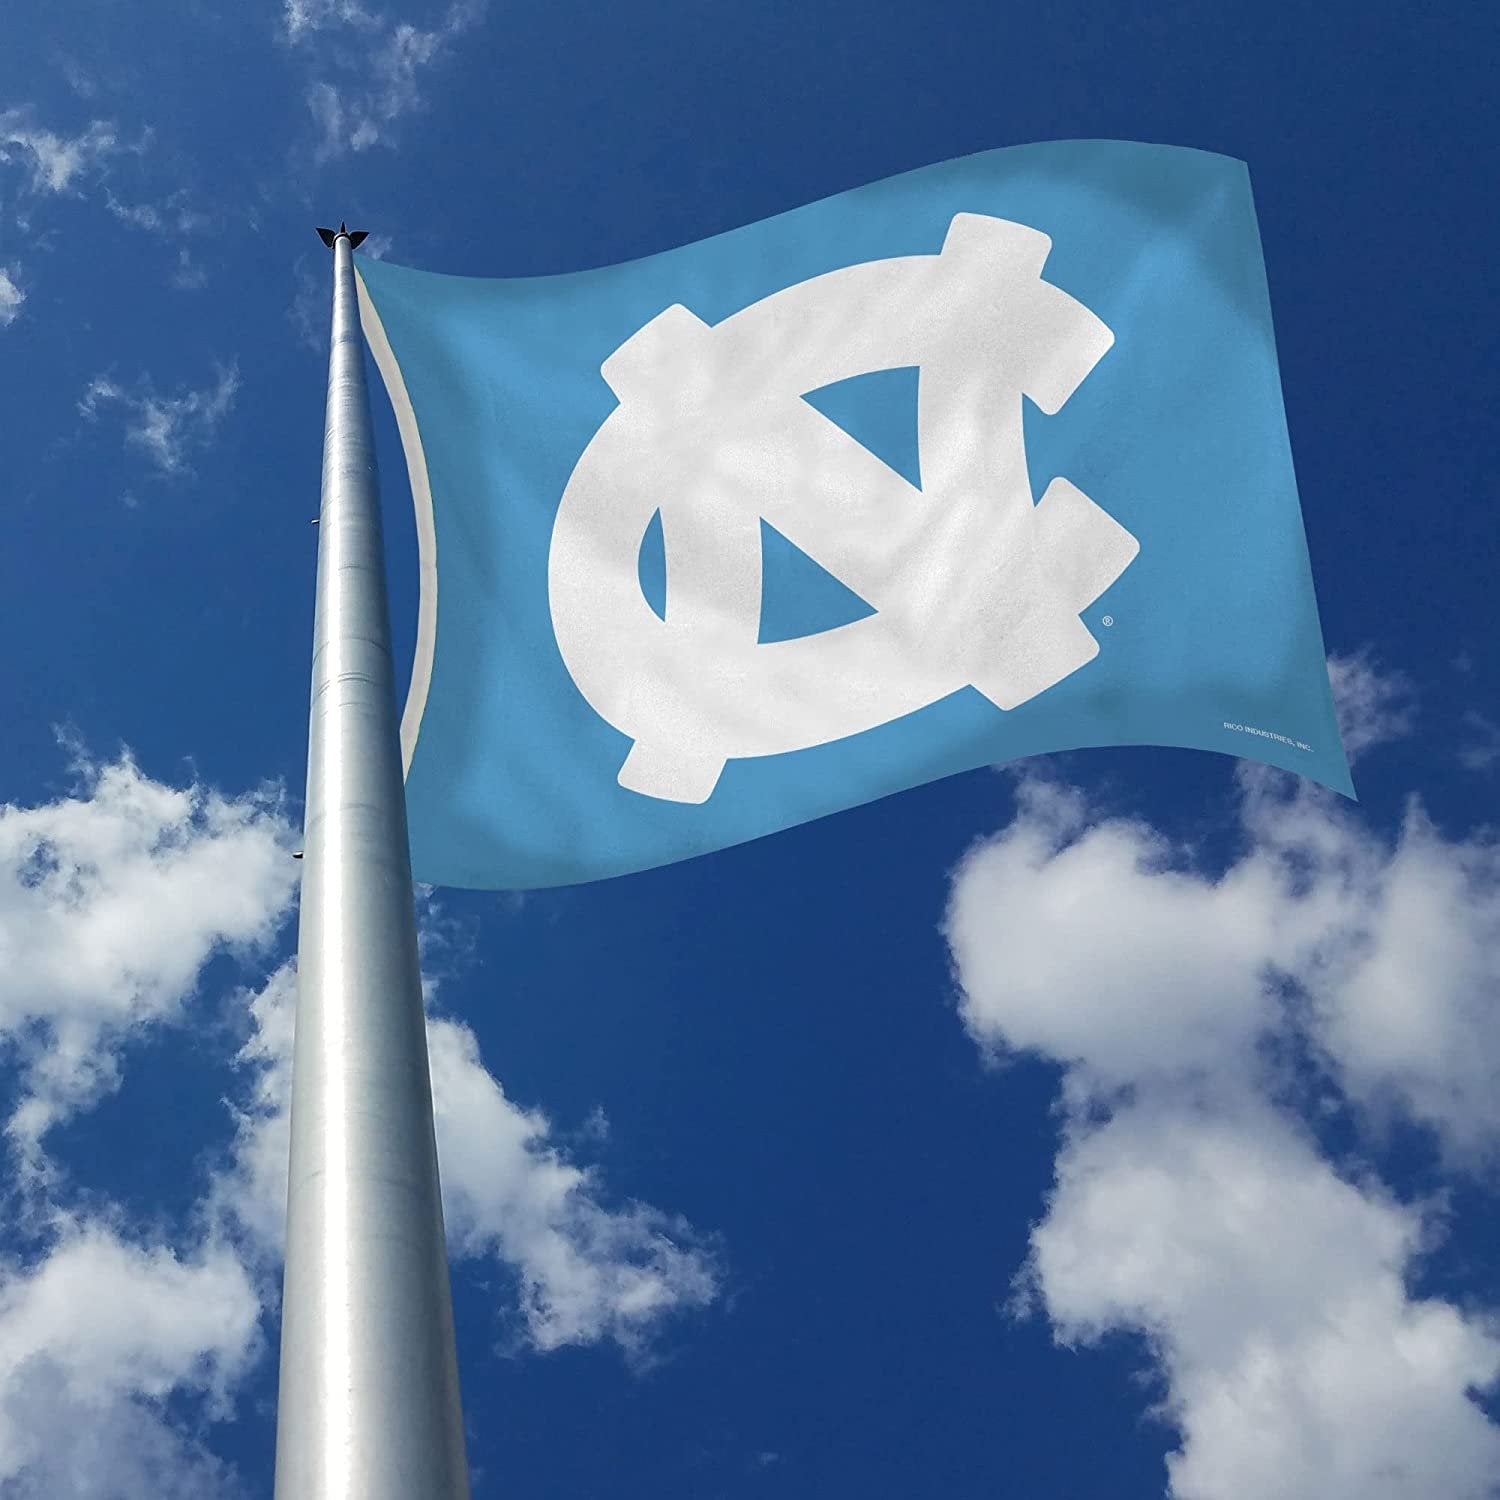 University of North Carolina Tar Heels 3x5 Flag Banner Metal Grommets Outdoor Indoor